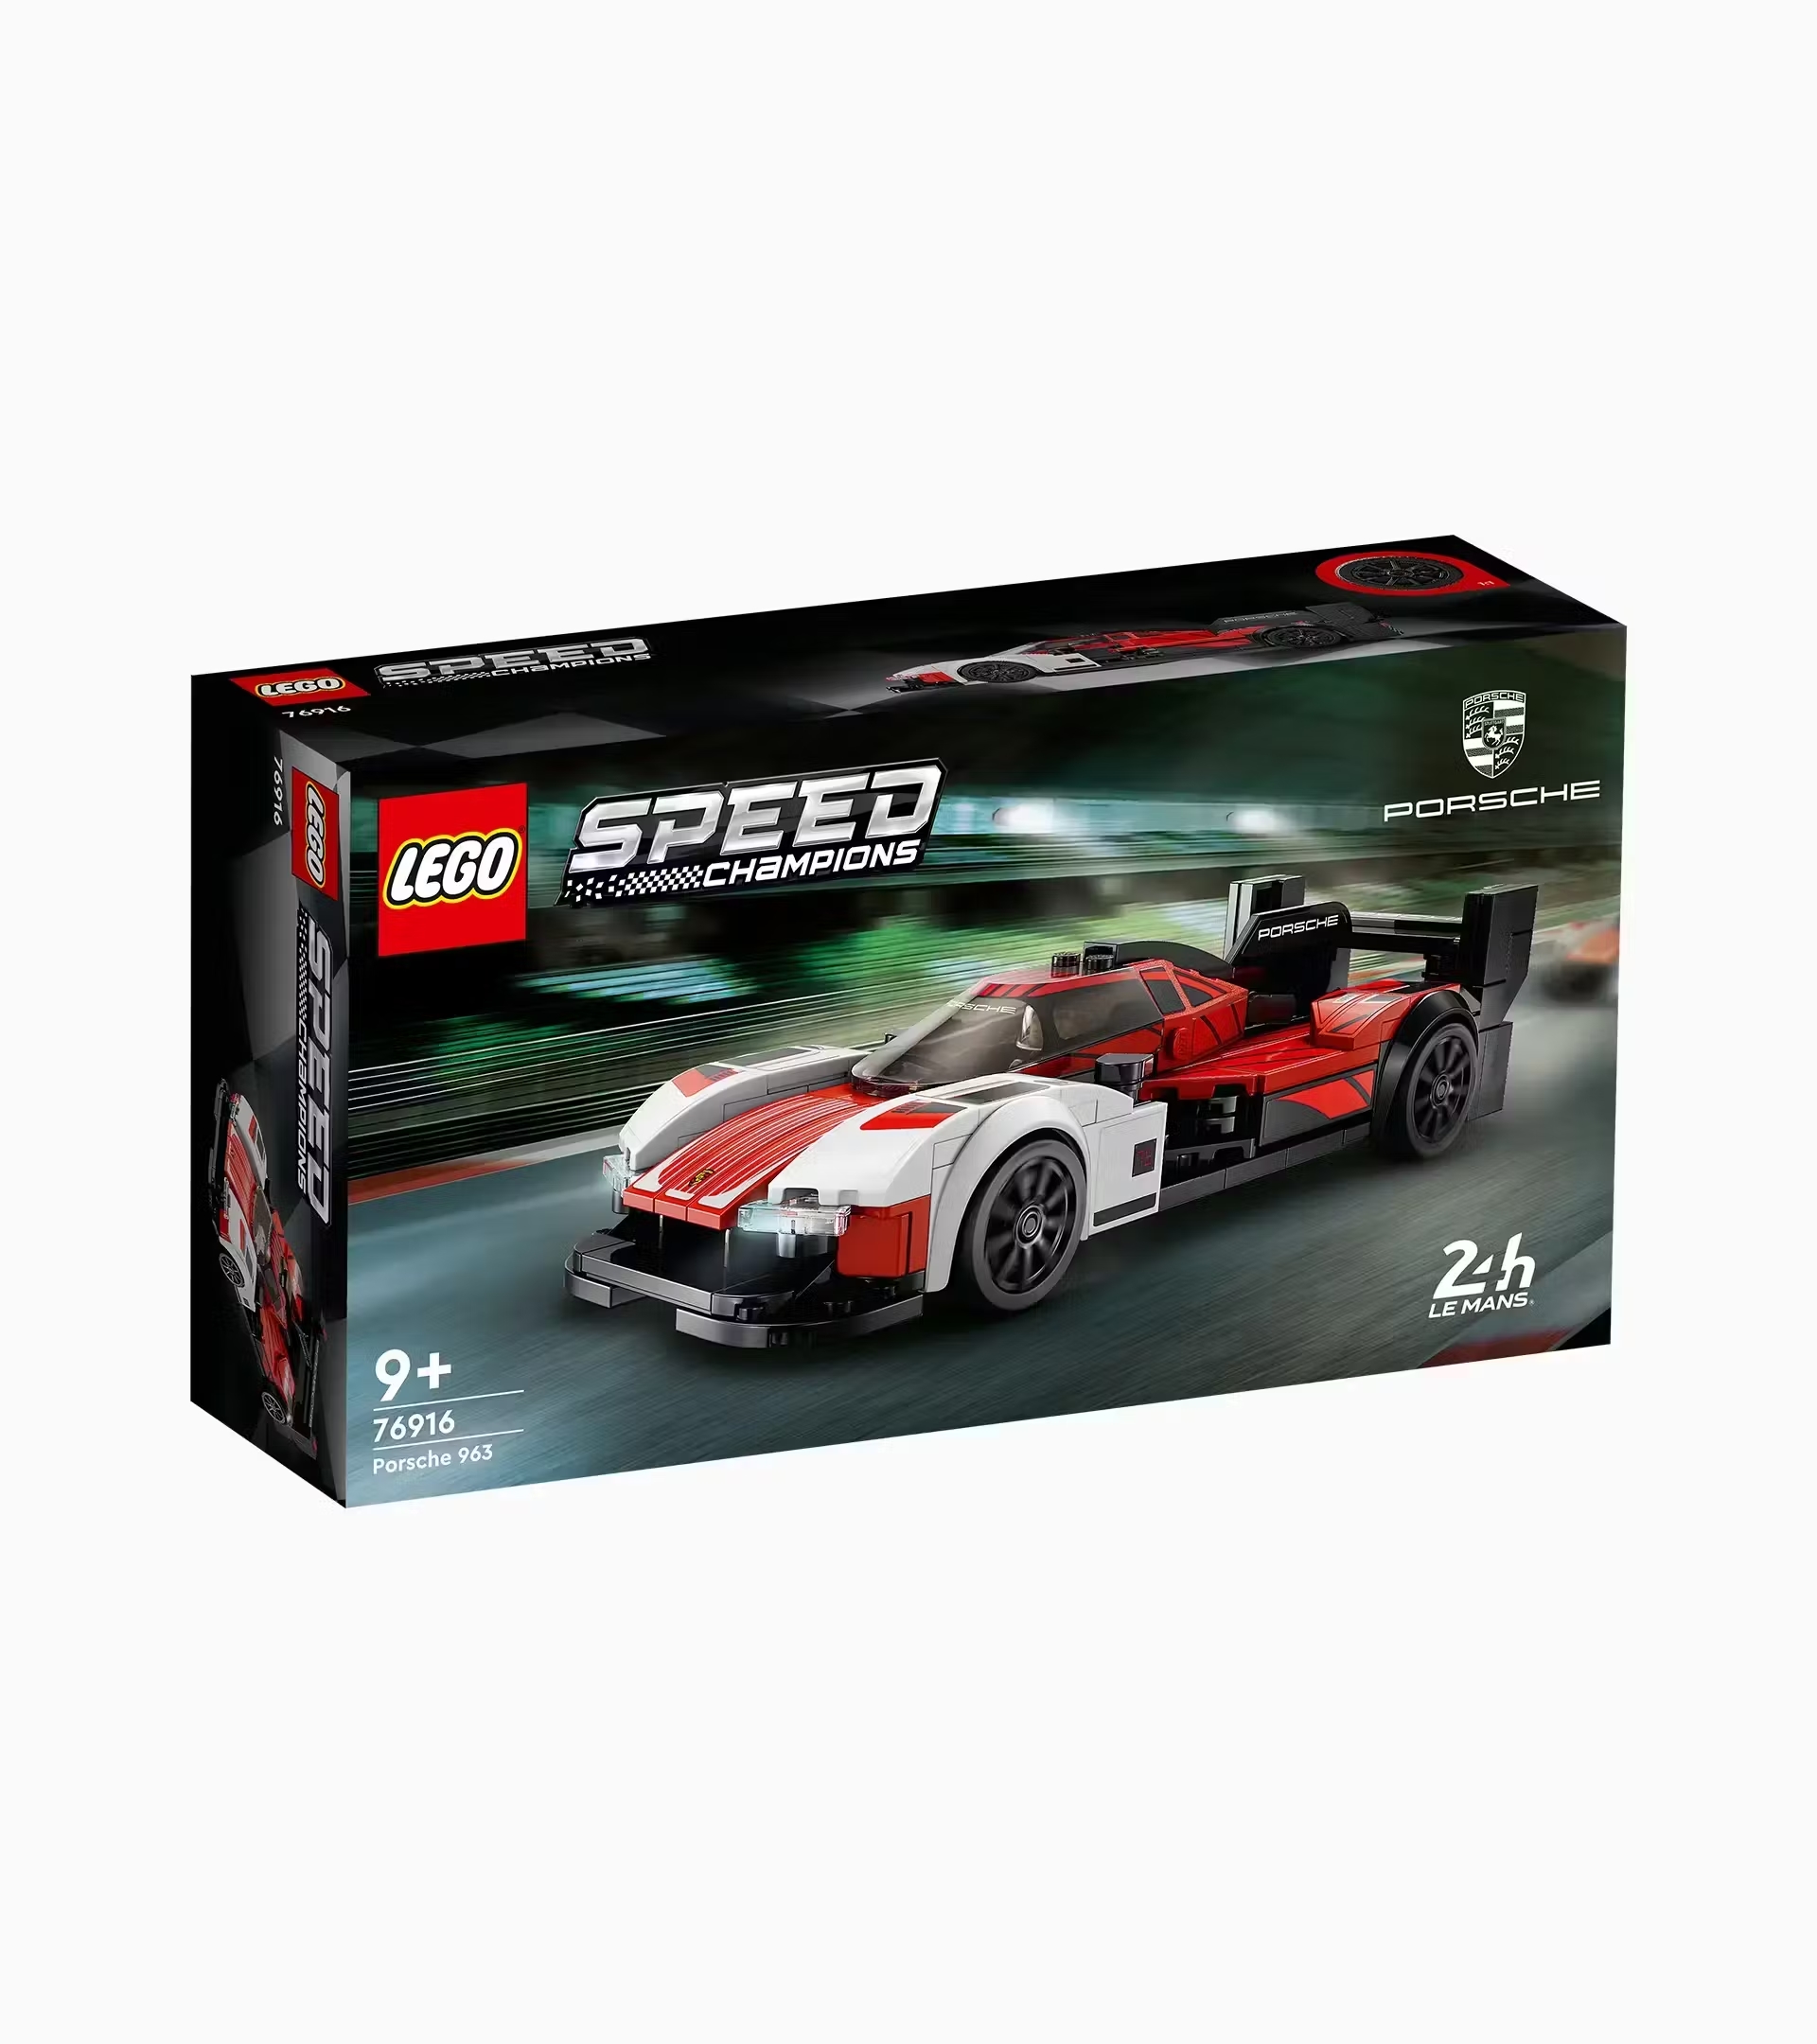 Porsche LEGO, Speed Champions Porsche, 963